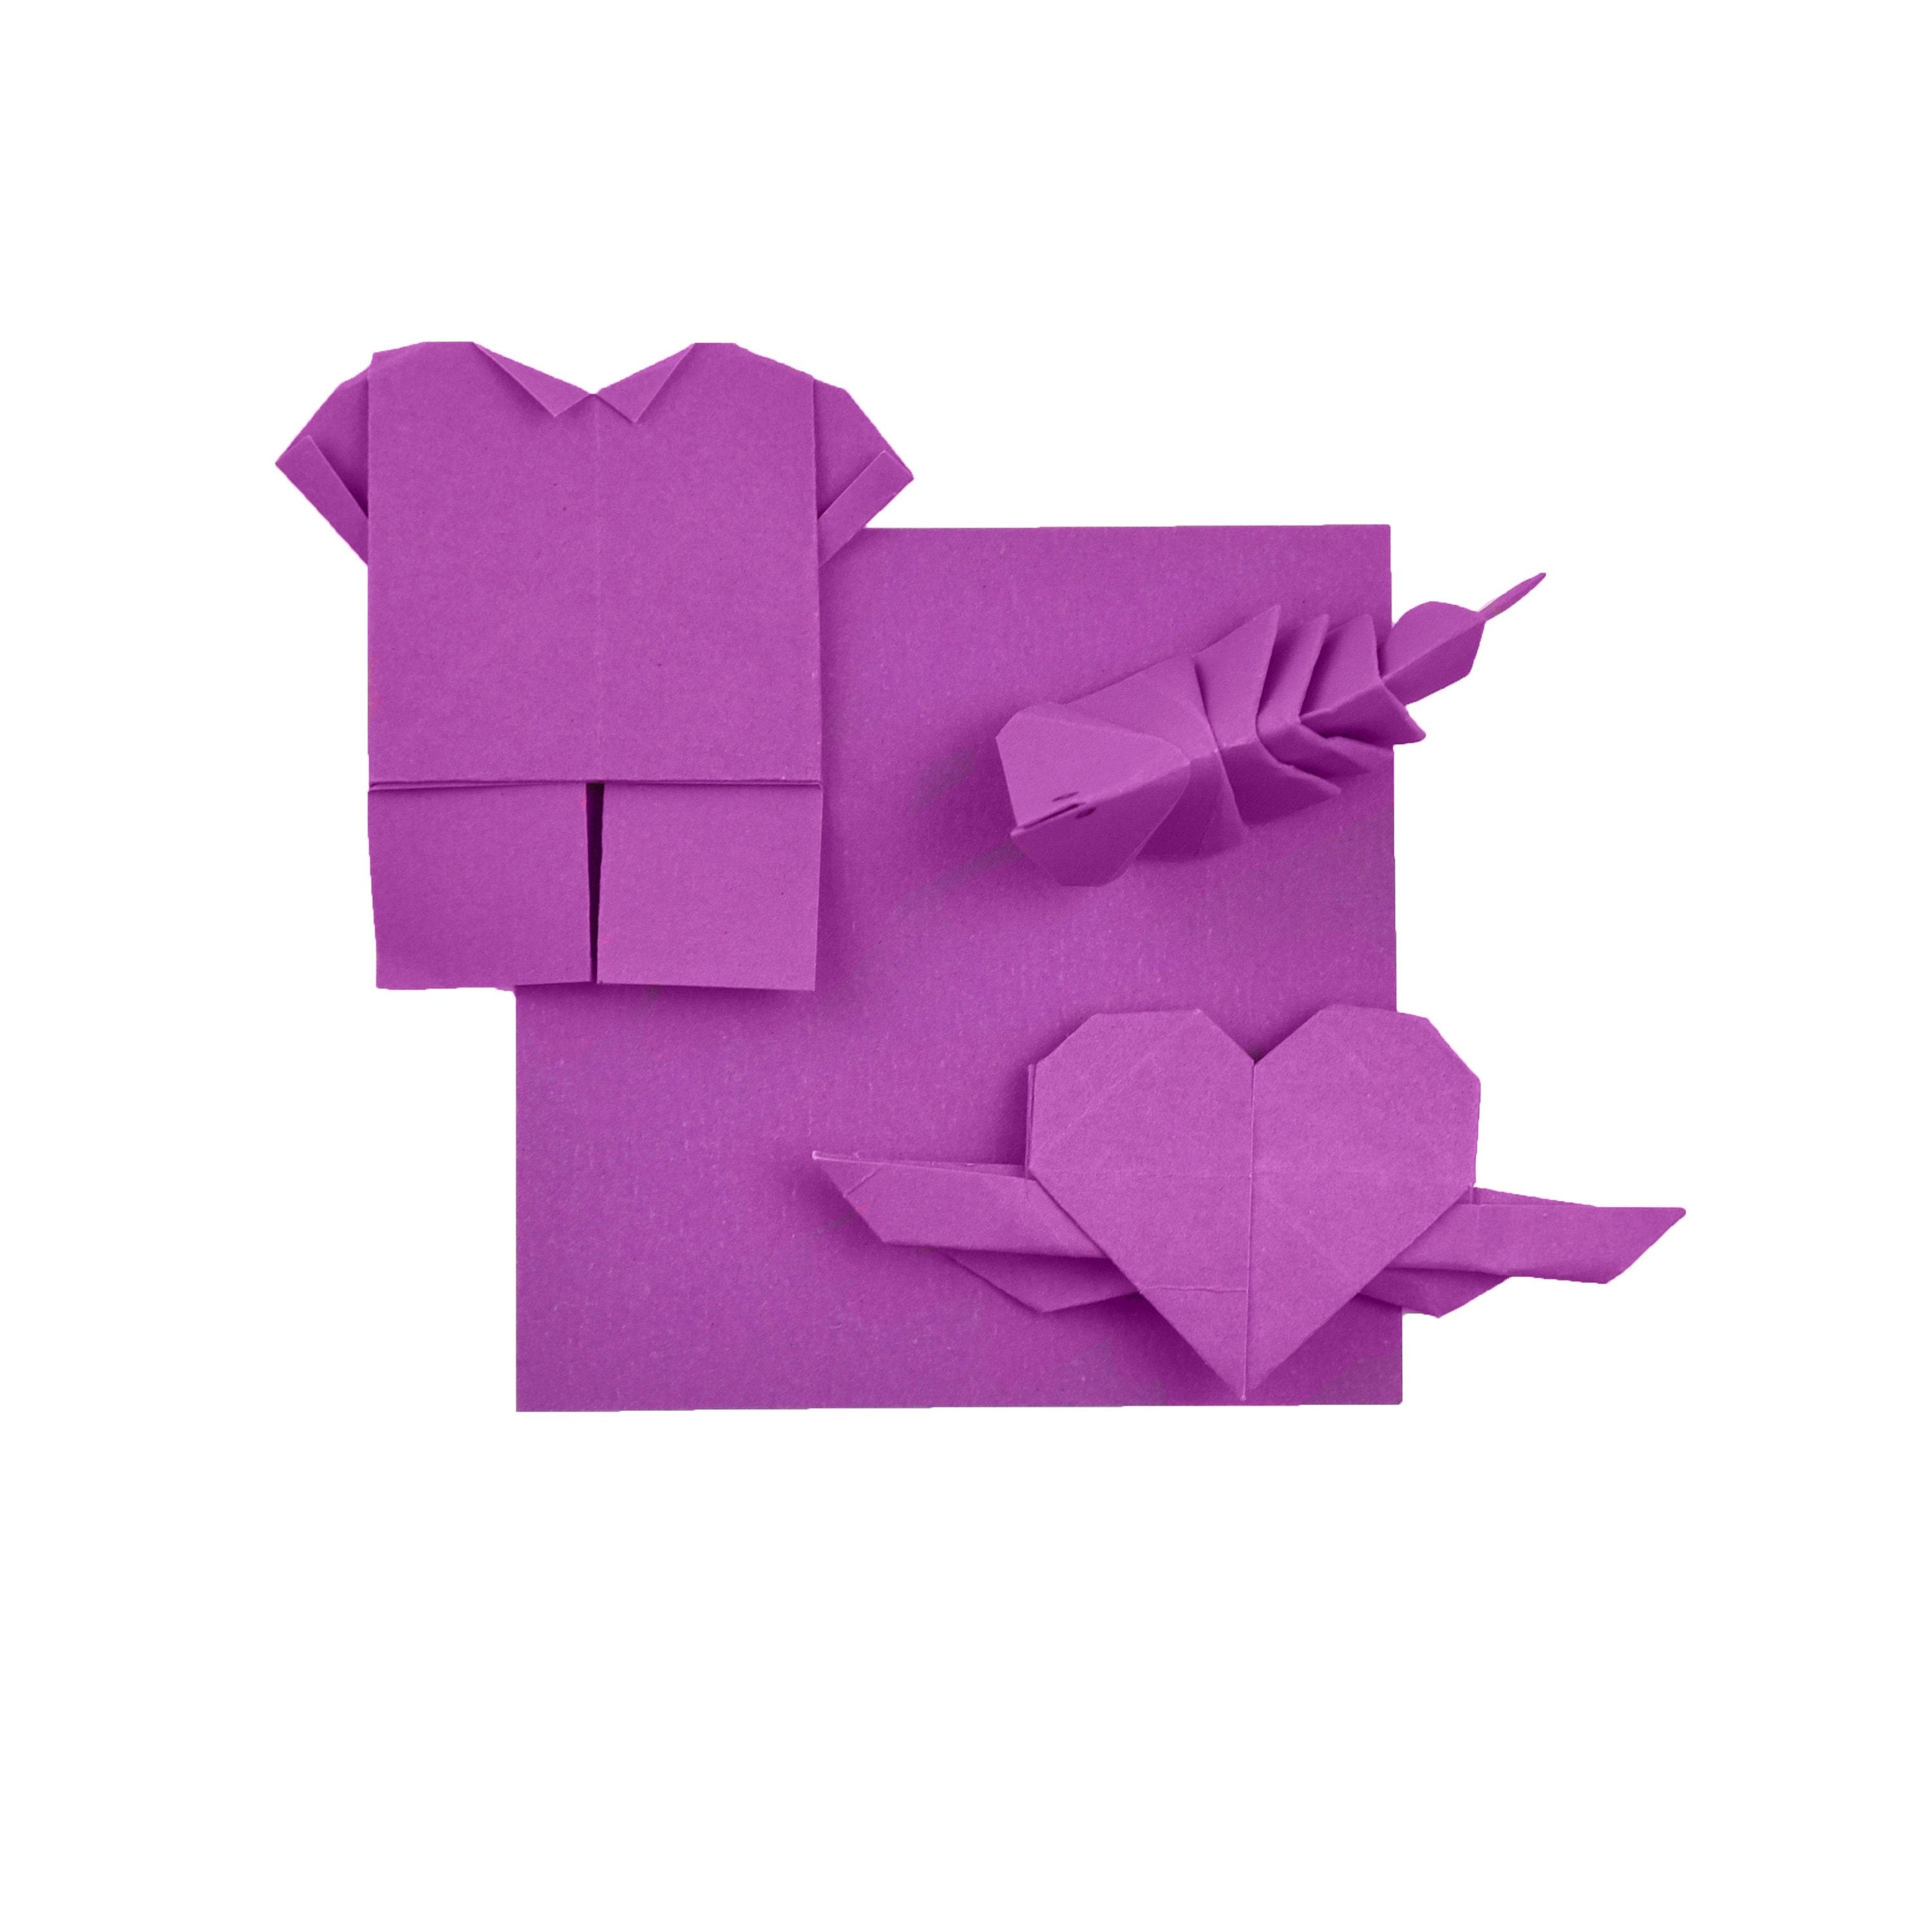 100 fogli di carta origami - 3x3 pollici - Confezione di carta quadrata per piegare, gru origami e decorazioni - S08